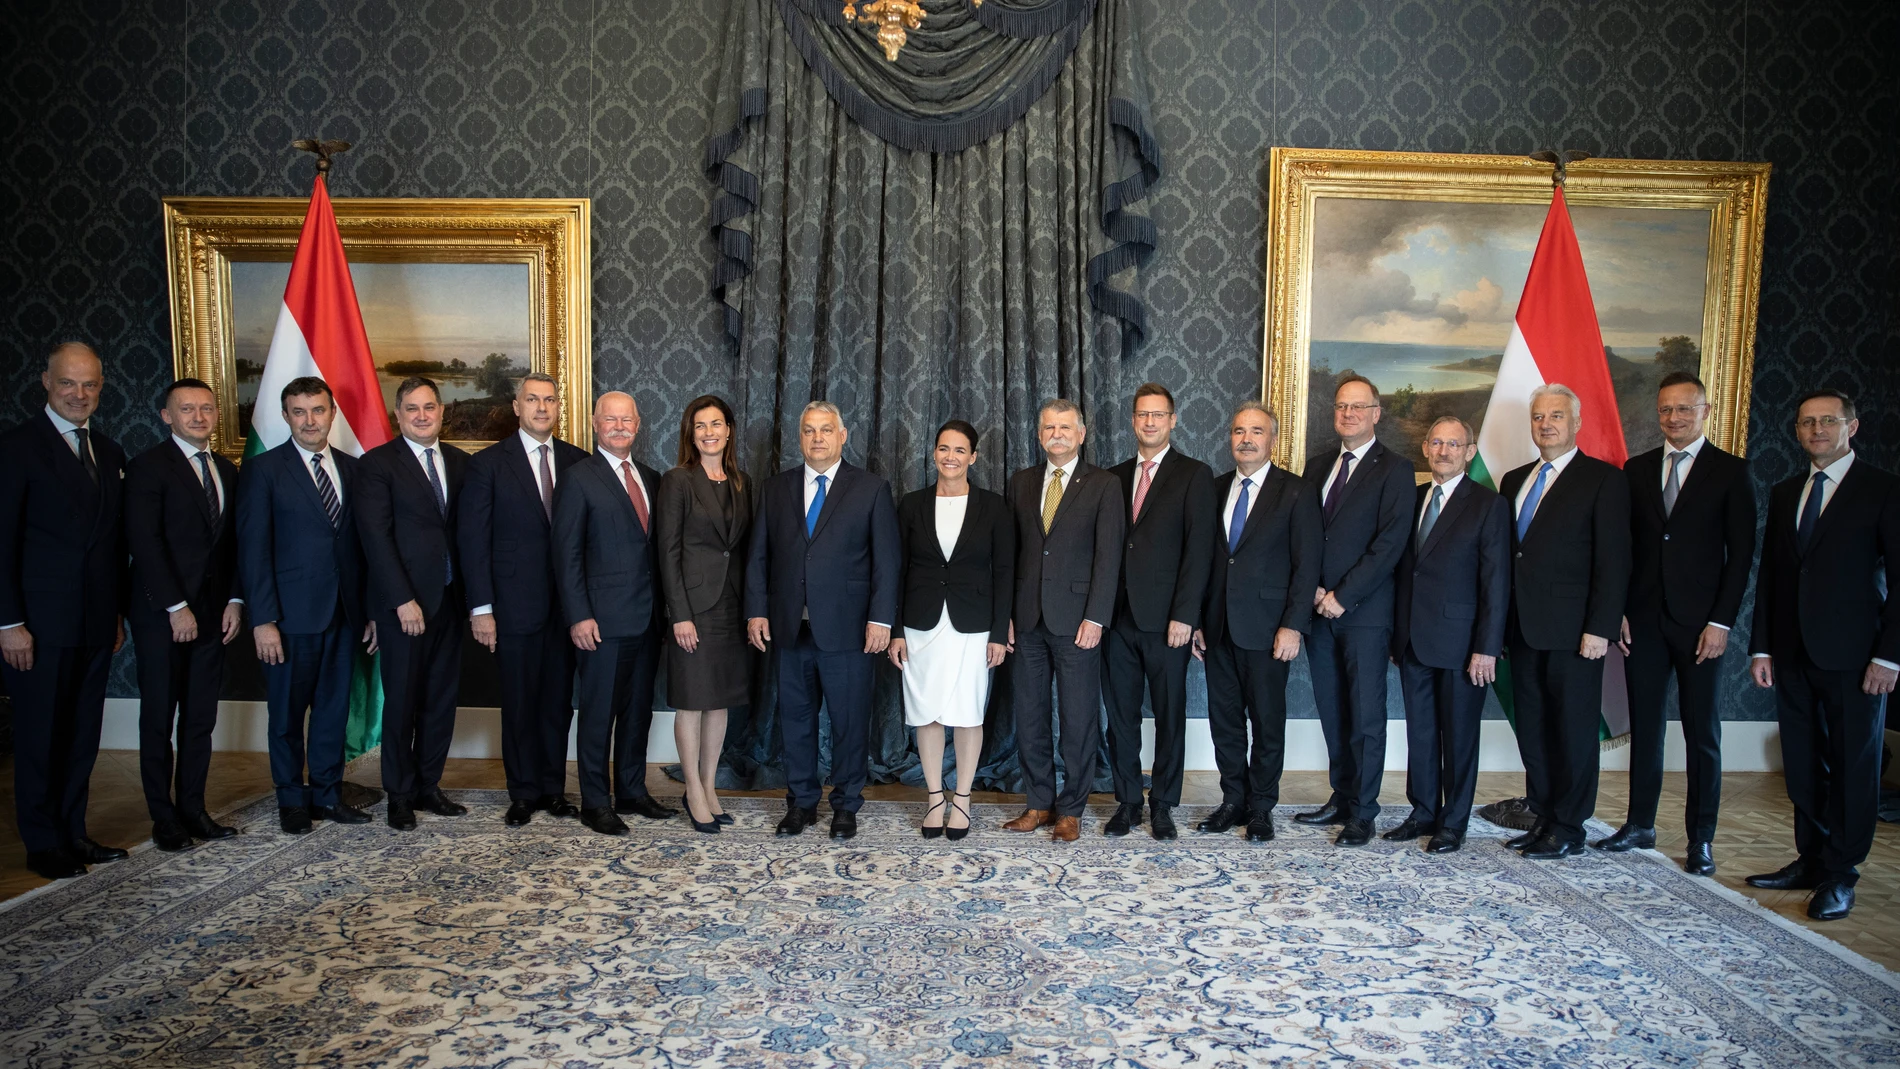 El "premier" húngaro, Viktor Orban, posa junto a su Gobierno, en que solo hay una mujer